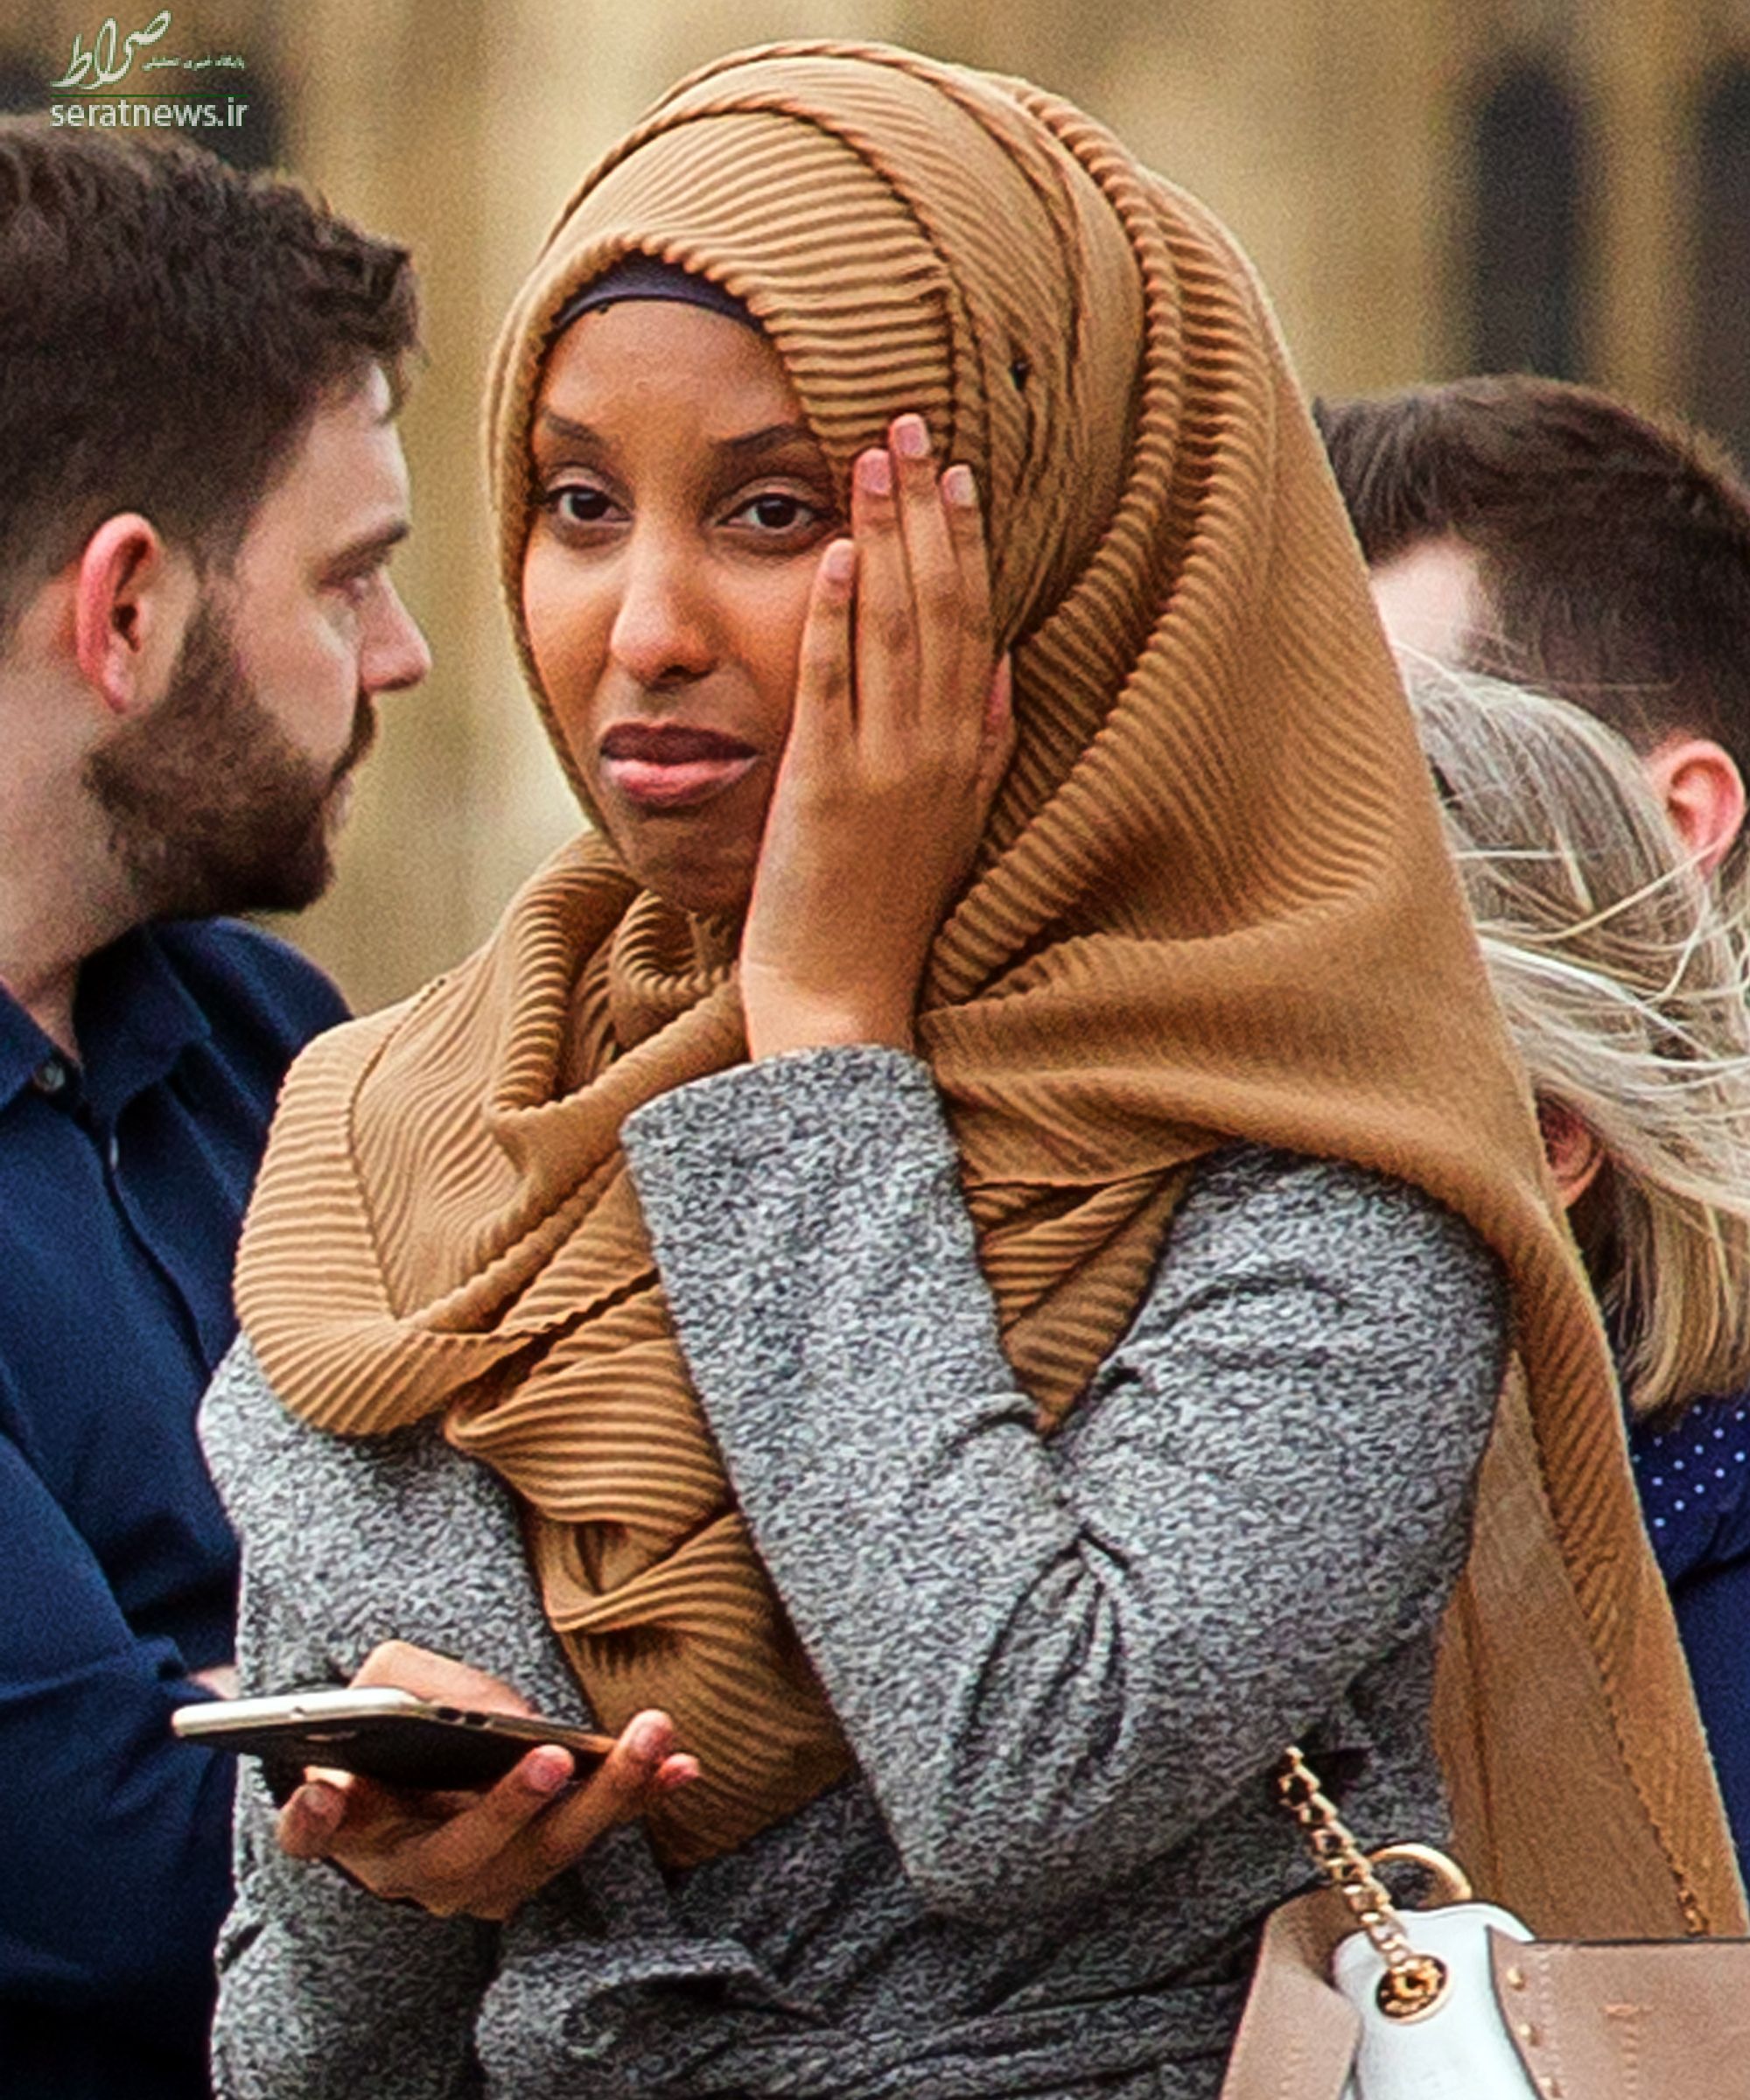 حجاب زن مسلمان در صحنه حمله لندن جنجال آفرید+تصاویر